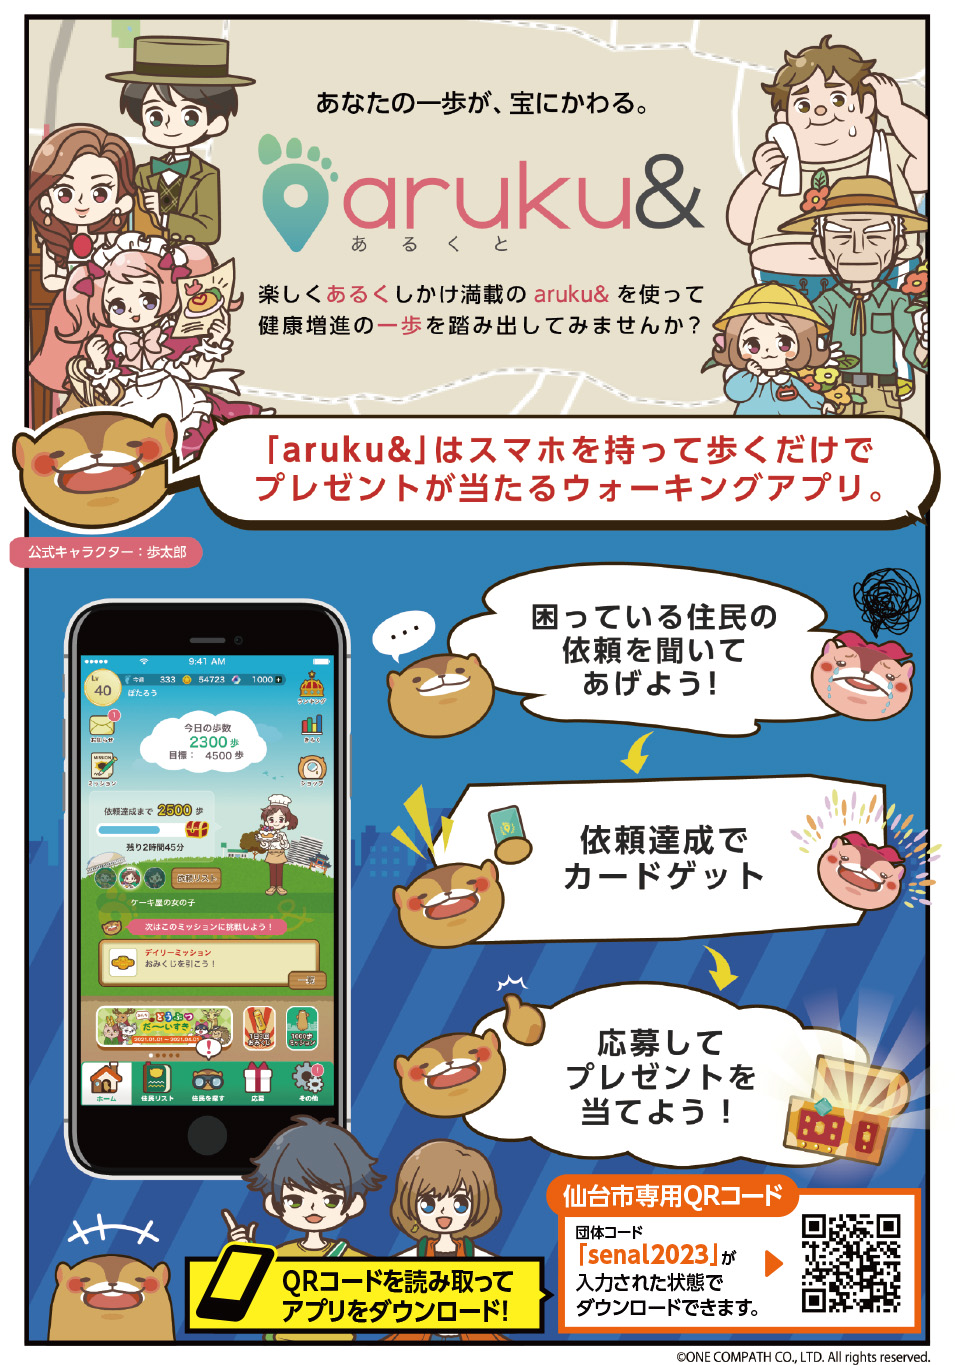 ウォーキングアプリ「aruku＆」(あるくと)